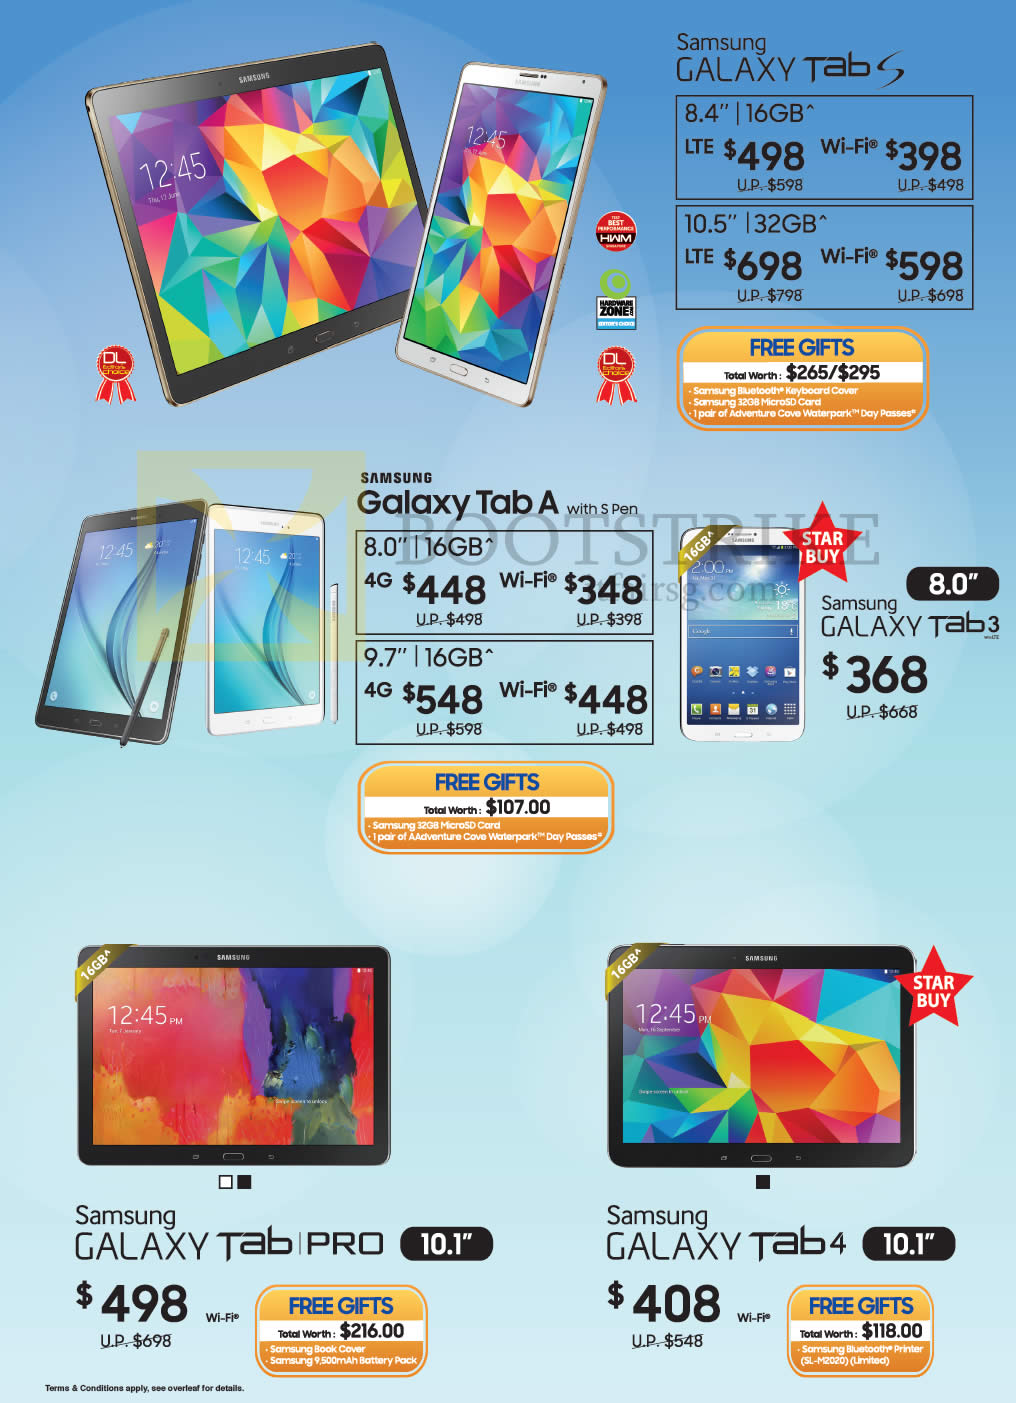 PC SHOW 2015 price list image brochure of Samsung Tablets Galaxy Tab S, Tab A, Tab 3, Tab Pro, Tab 4